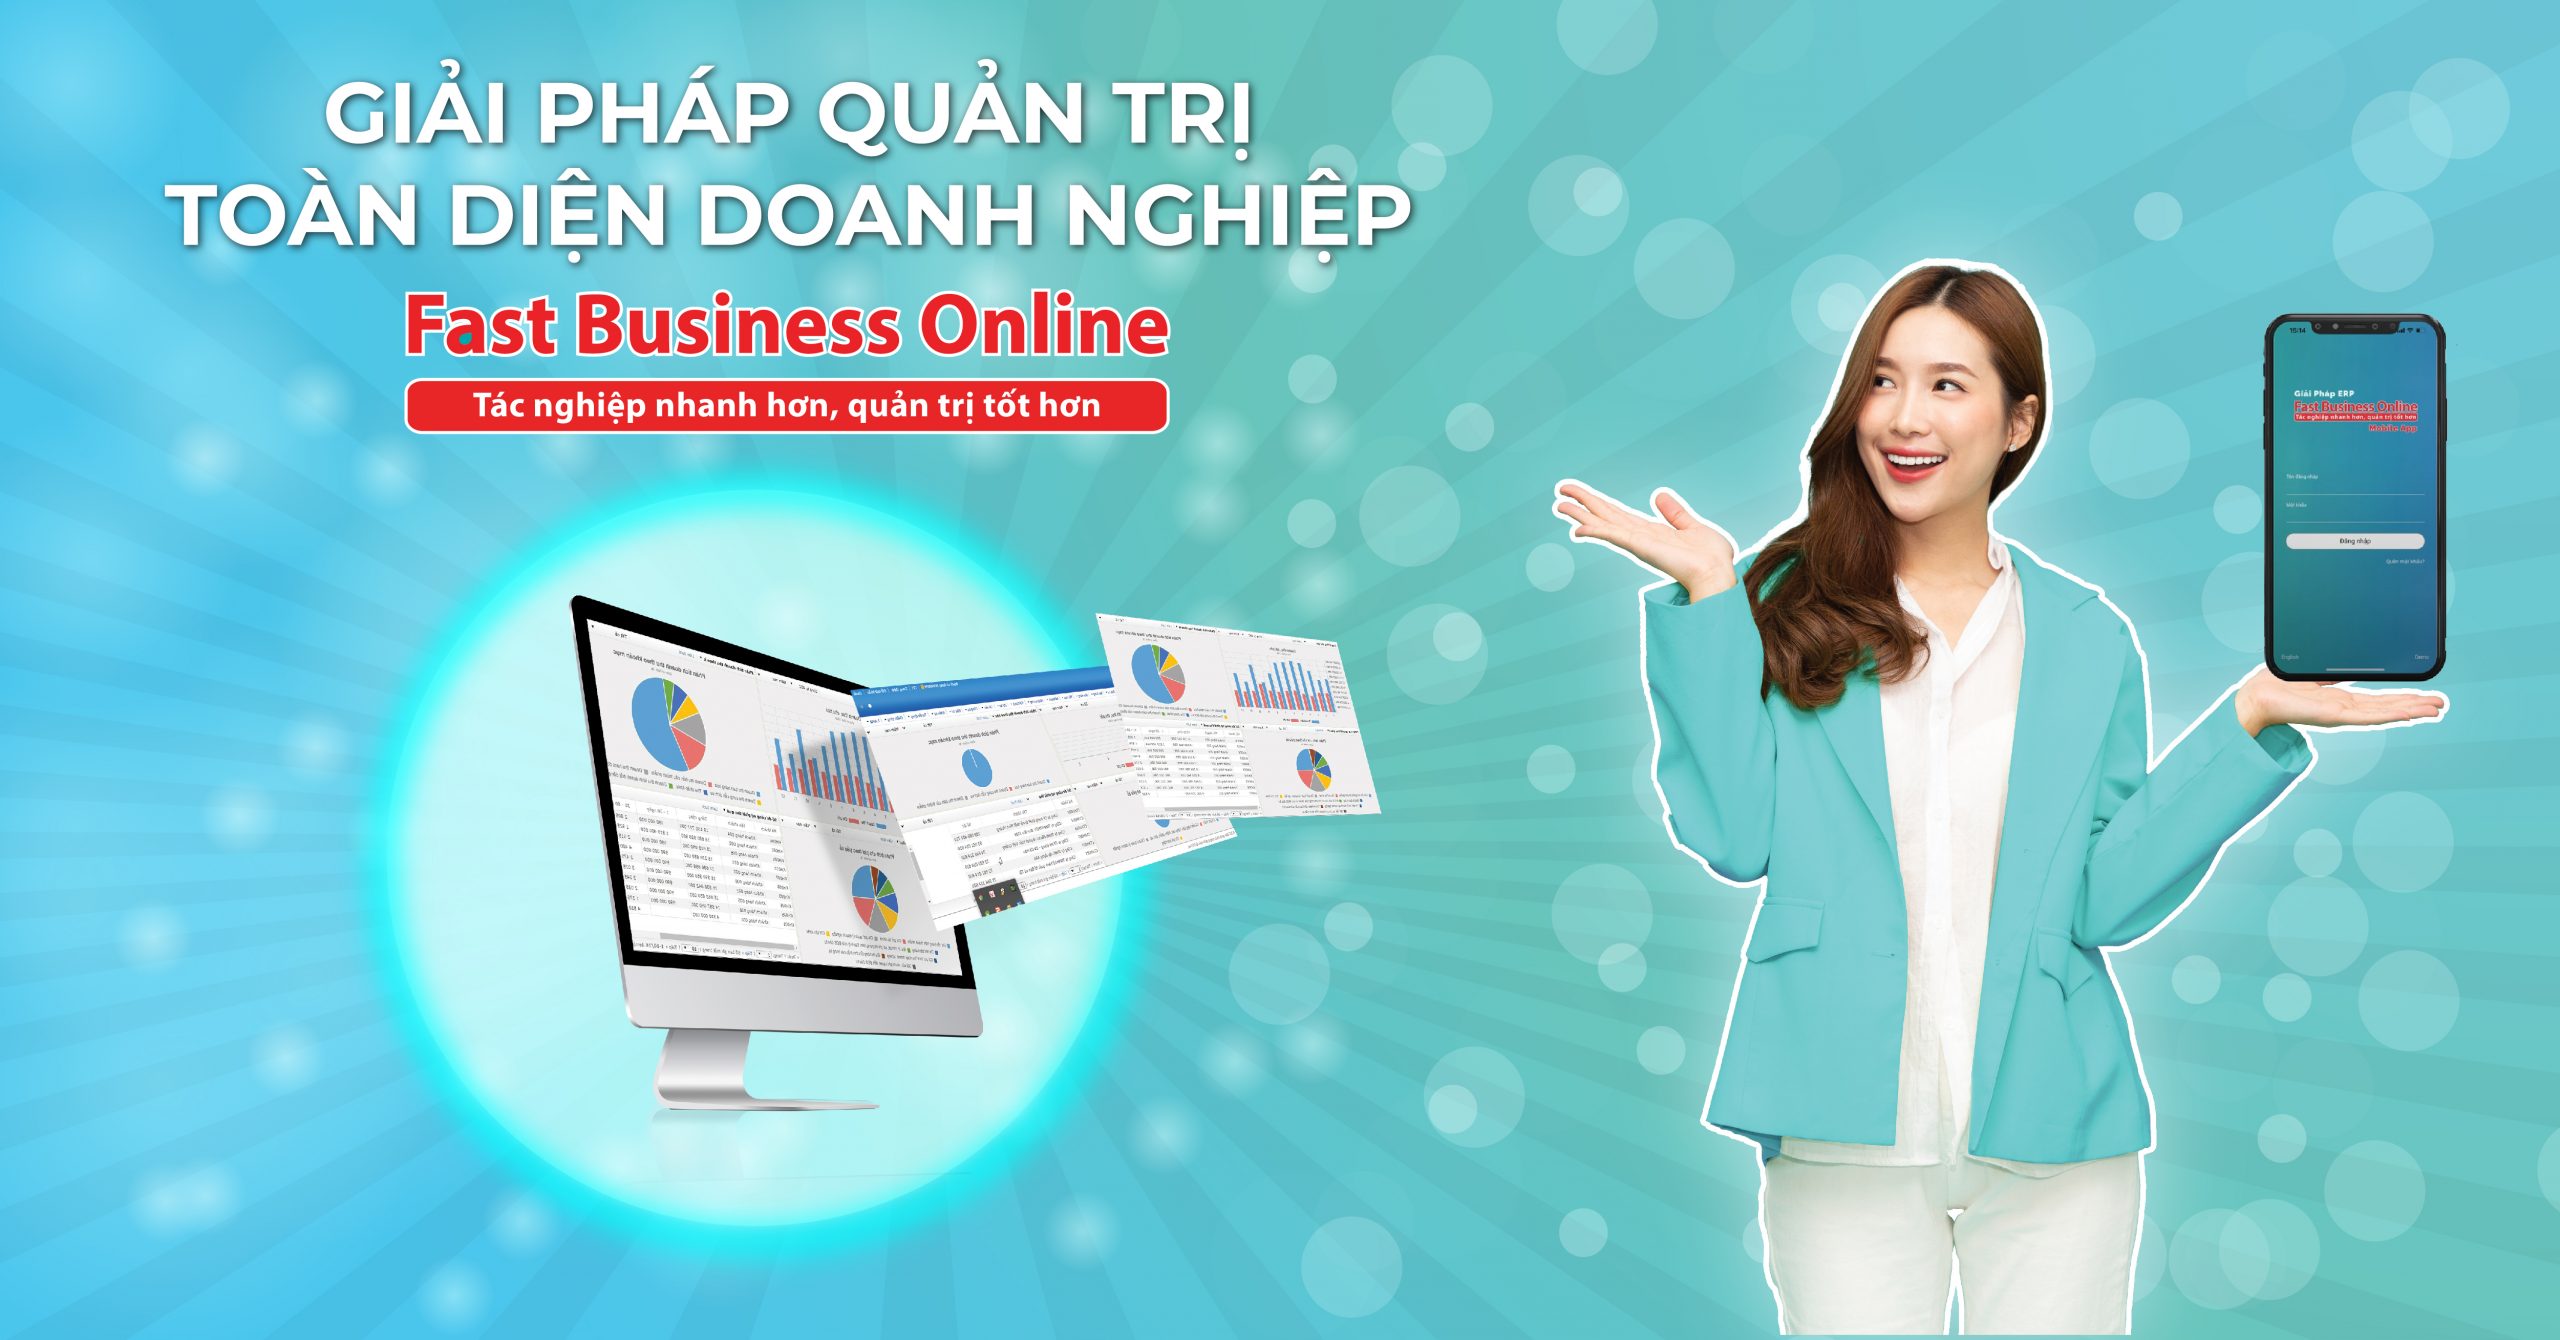 Kết hợp MBO với ERP Fast Business Online giúp doanh nghiệp quản trị công việc hiệu quả